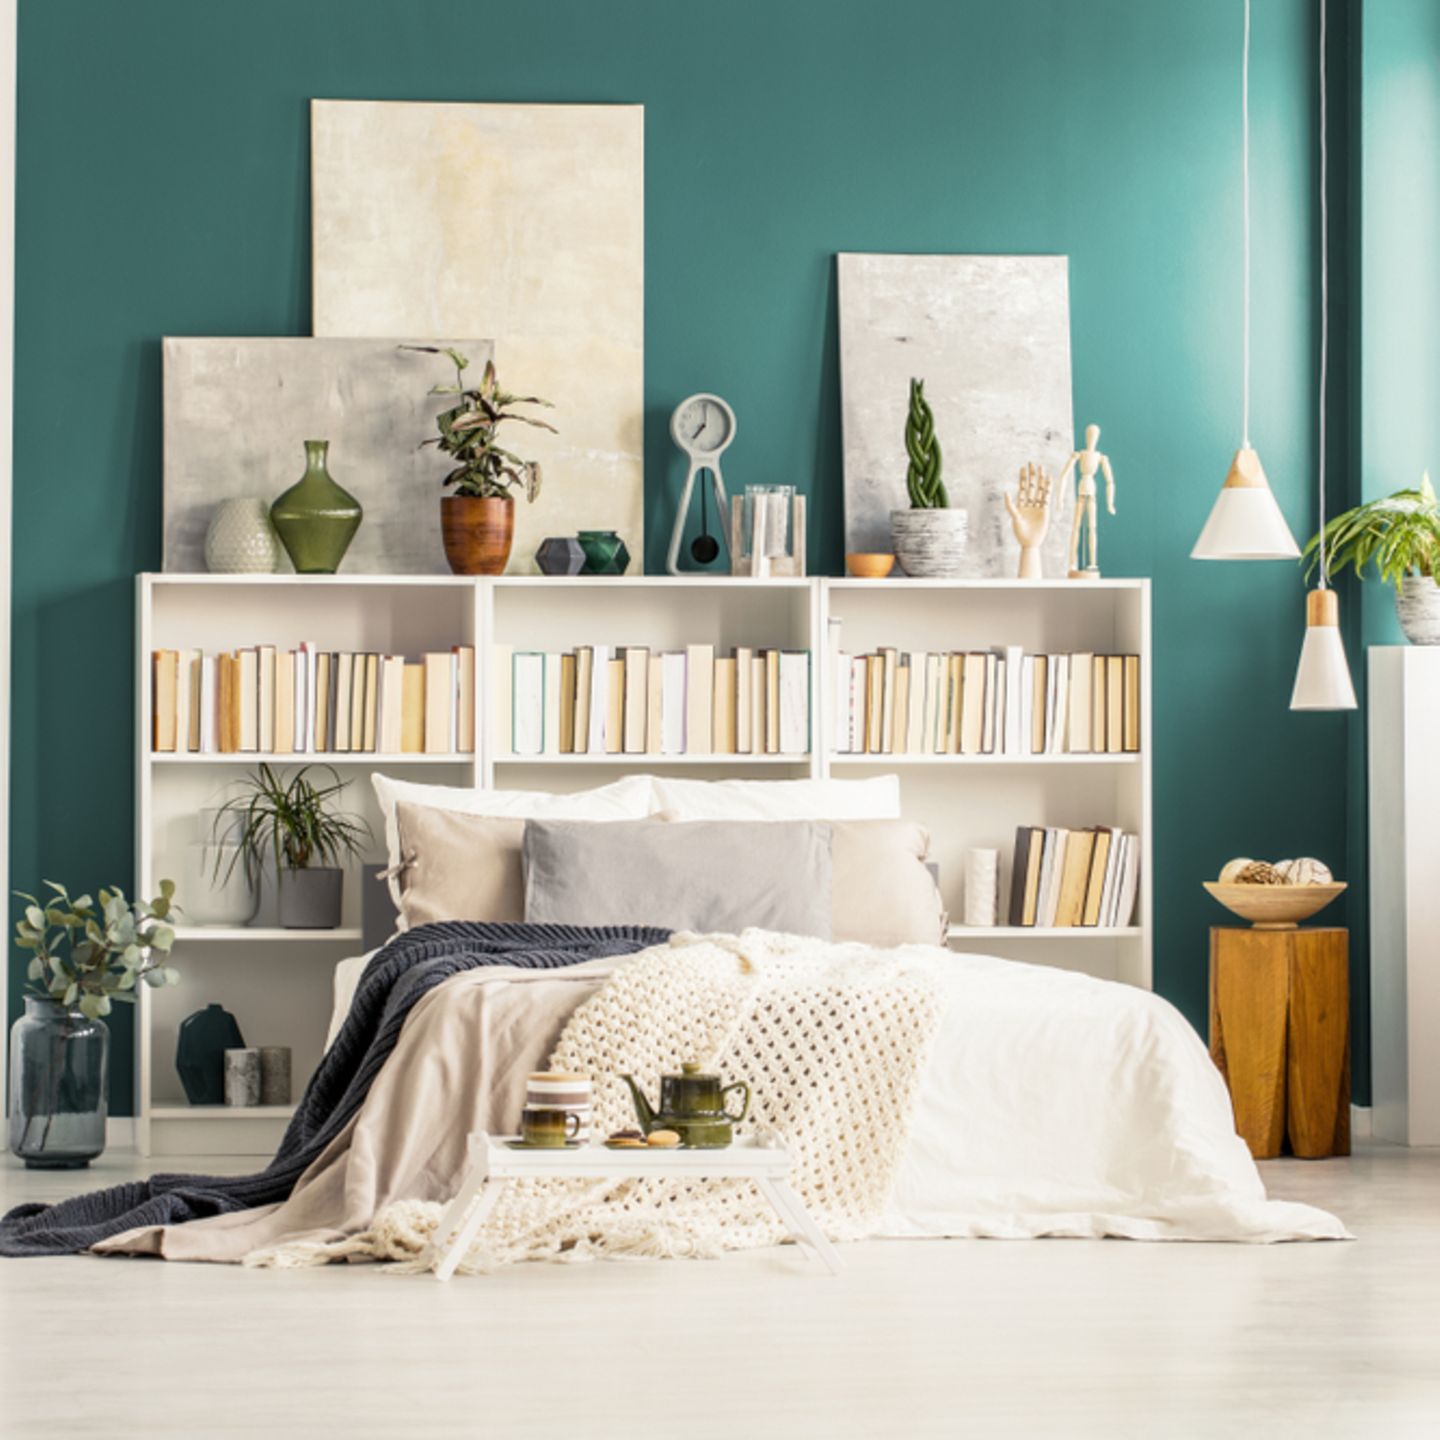 Wandgestaltung Schlafzimmer: 6 kreative Ideen: Bett vor einer kleinen Bücherwand und grüner Wandfarbe